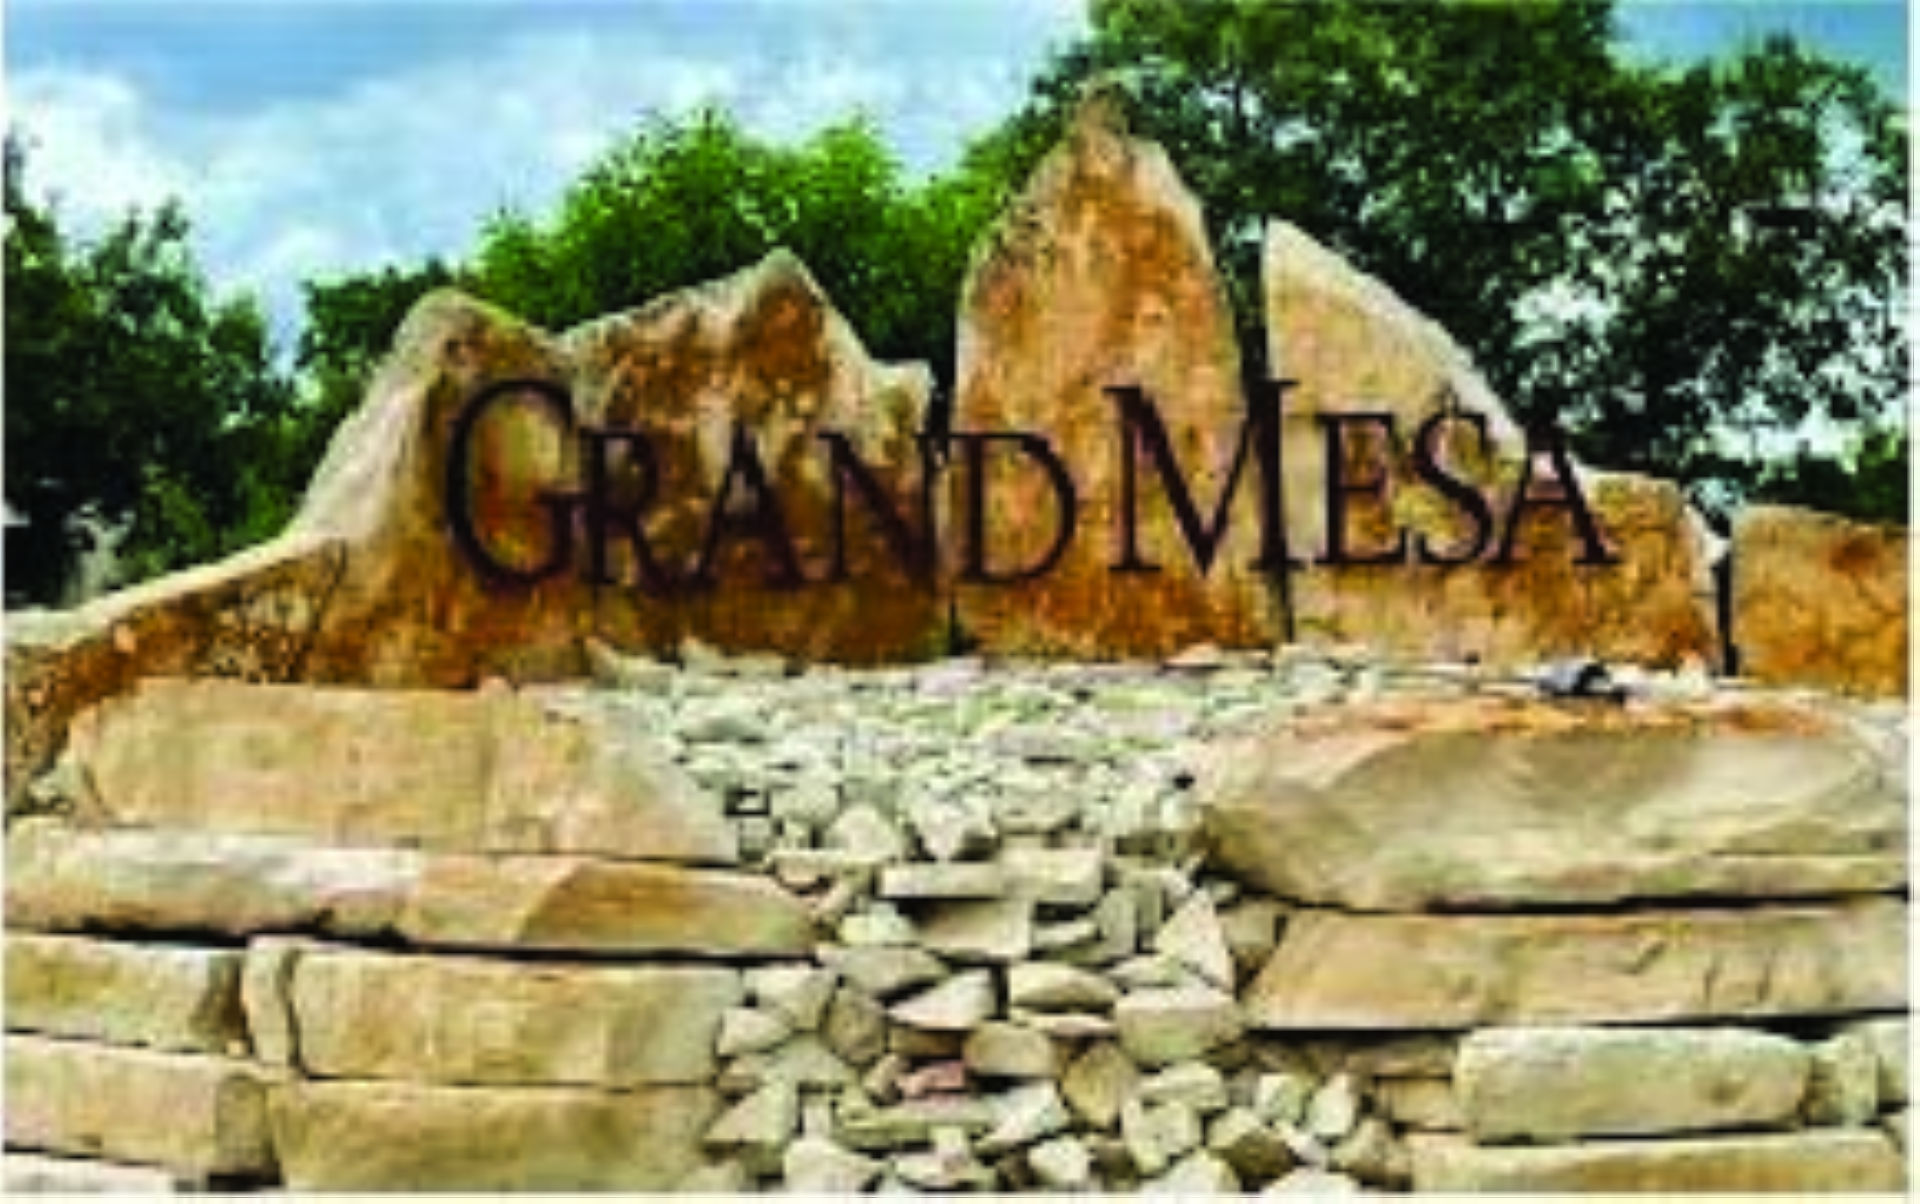 Grand Mesa at Crystal Falls